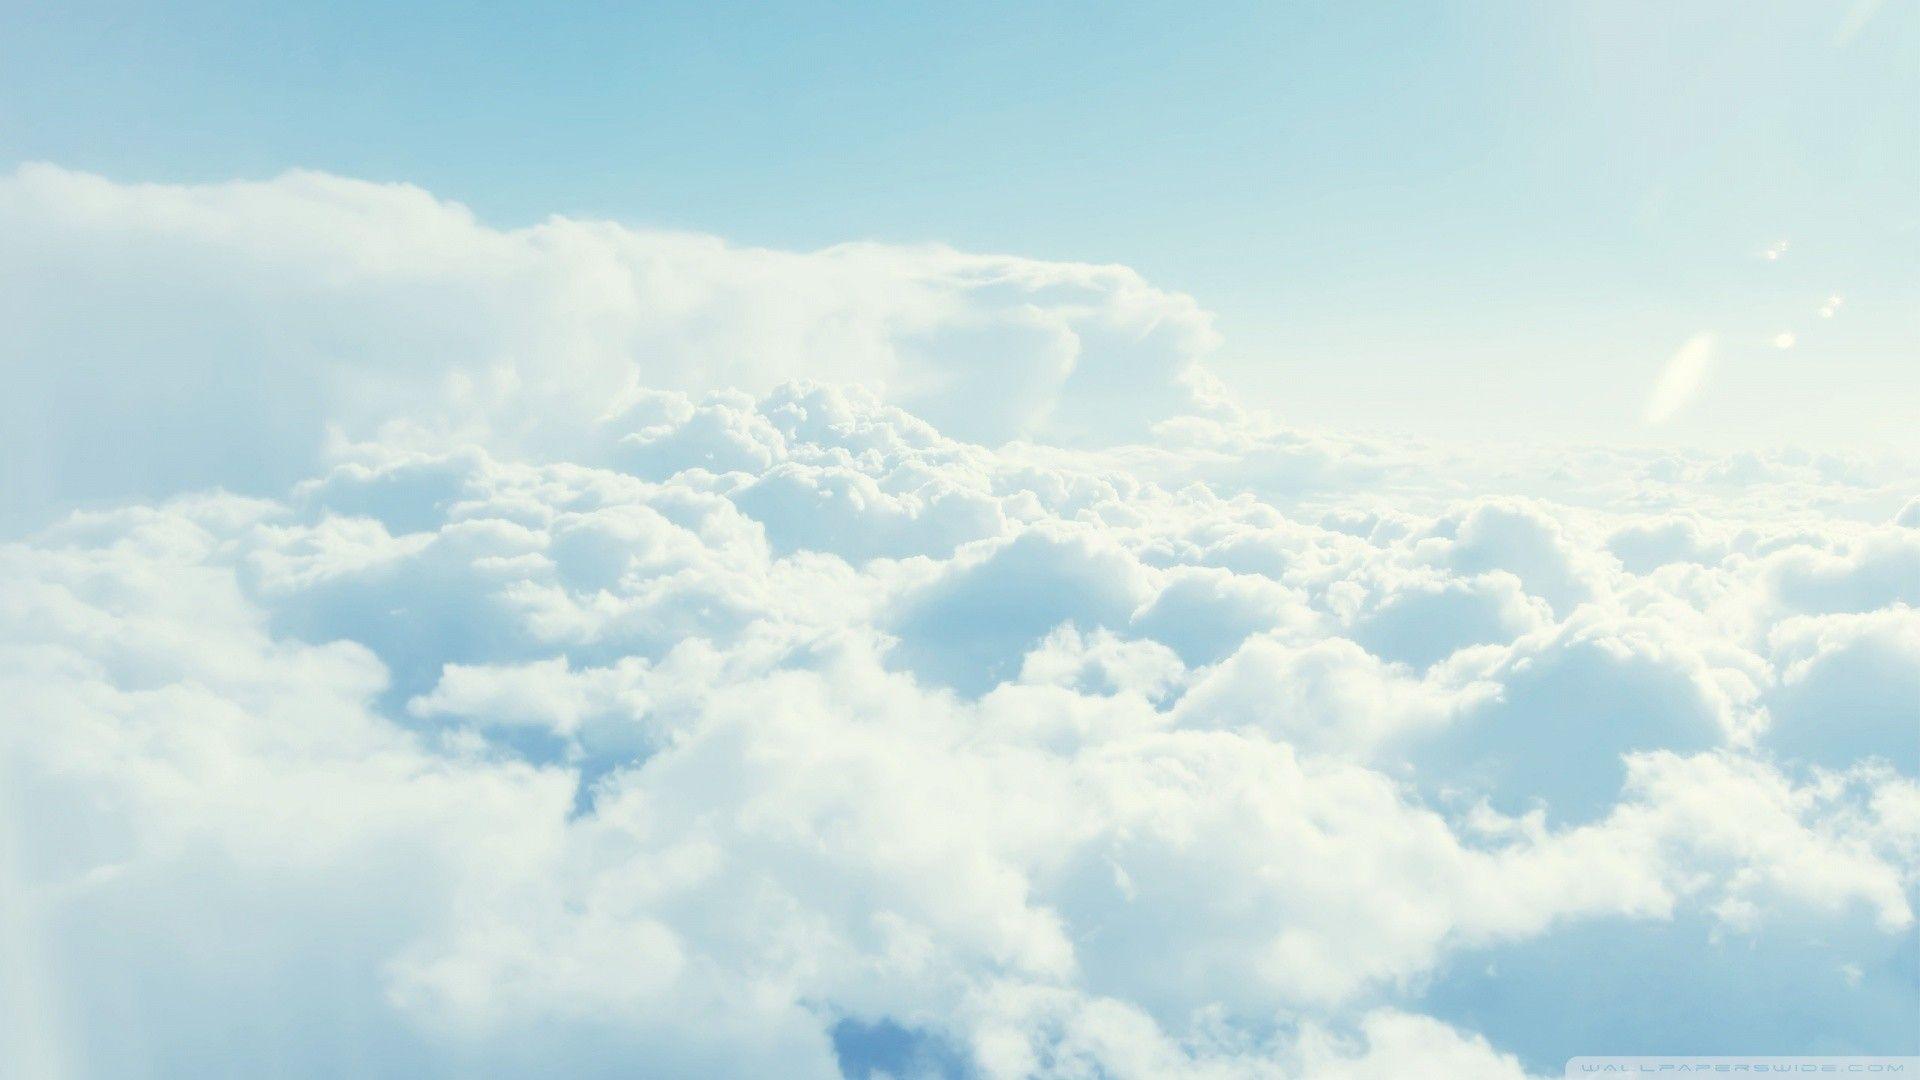 Nhìn lên trời và ngắm nhìn đám mây đầy những hình thù độc đáo thật sự tuyệt vời. Nơi đó, sự tự do được thể hiện một cách hoàn hảo và tạo nên một không khí tuyệt vời.